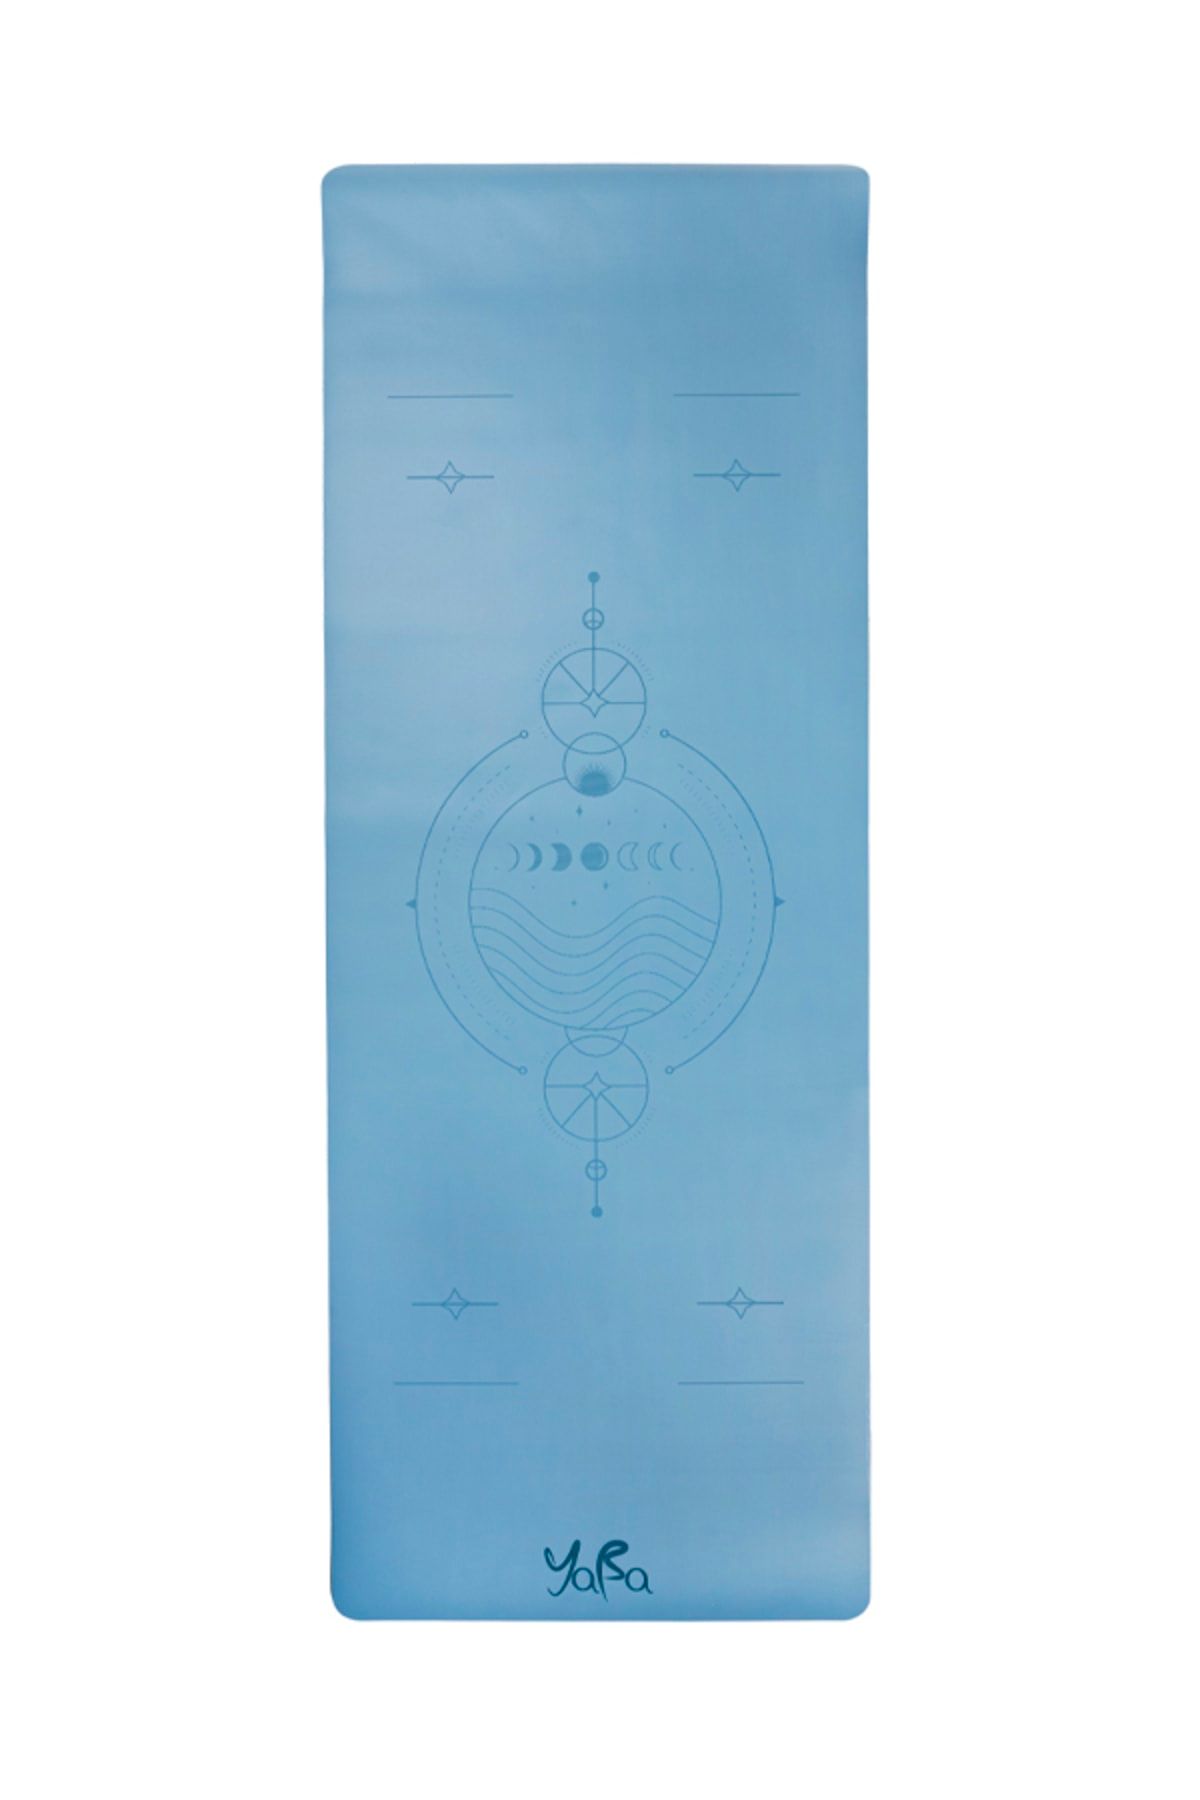 YABA Pu - Rubber Yoga Matı Minderi Ay Haritası 183*68*0.5cm Mavi